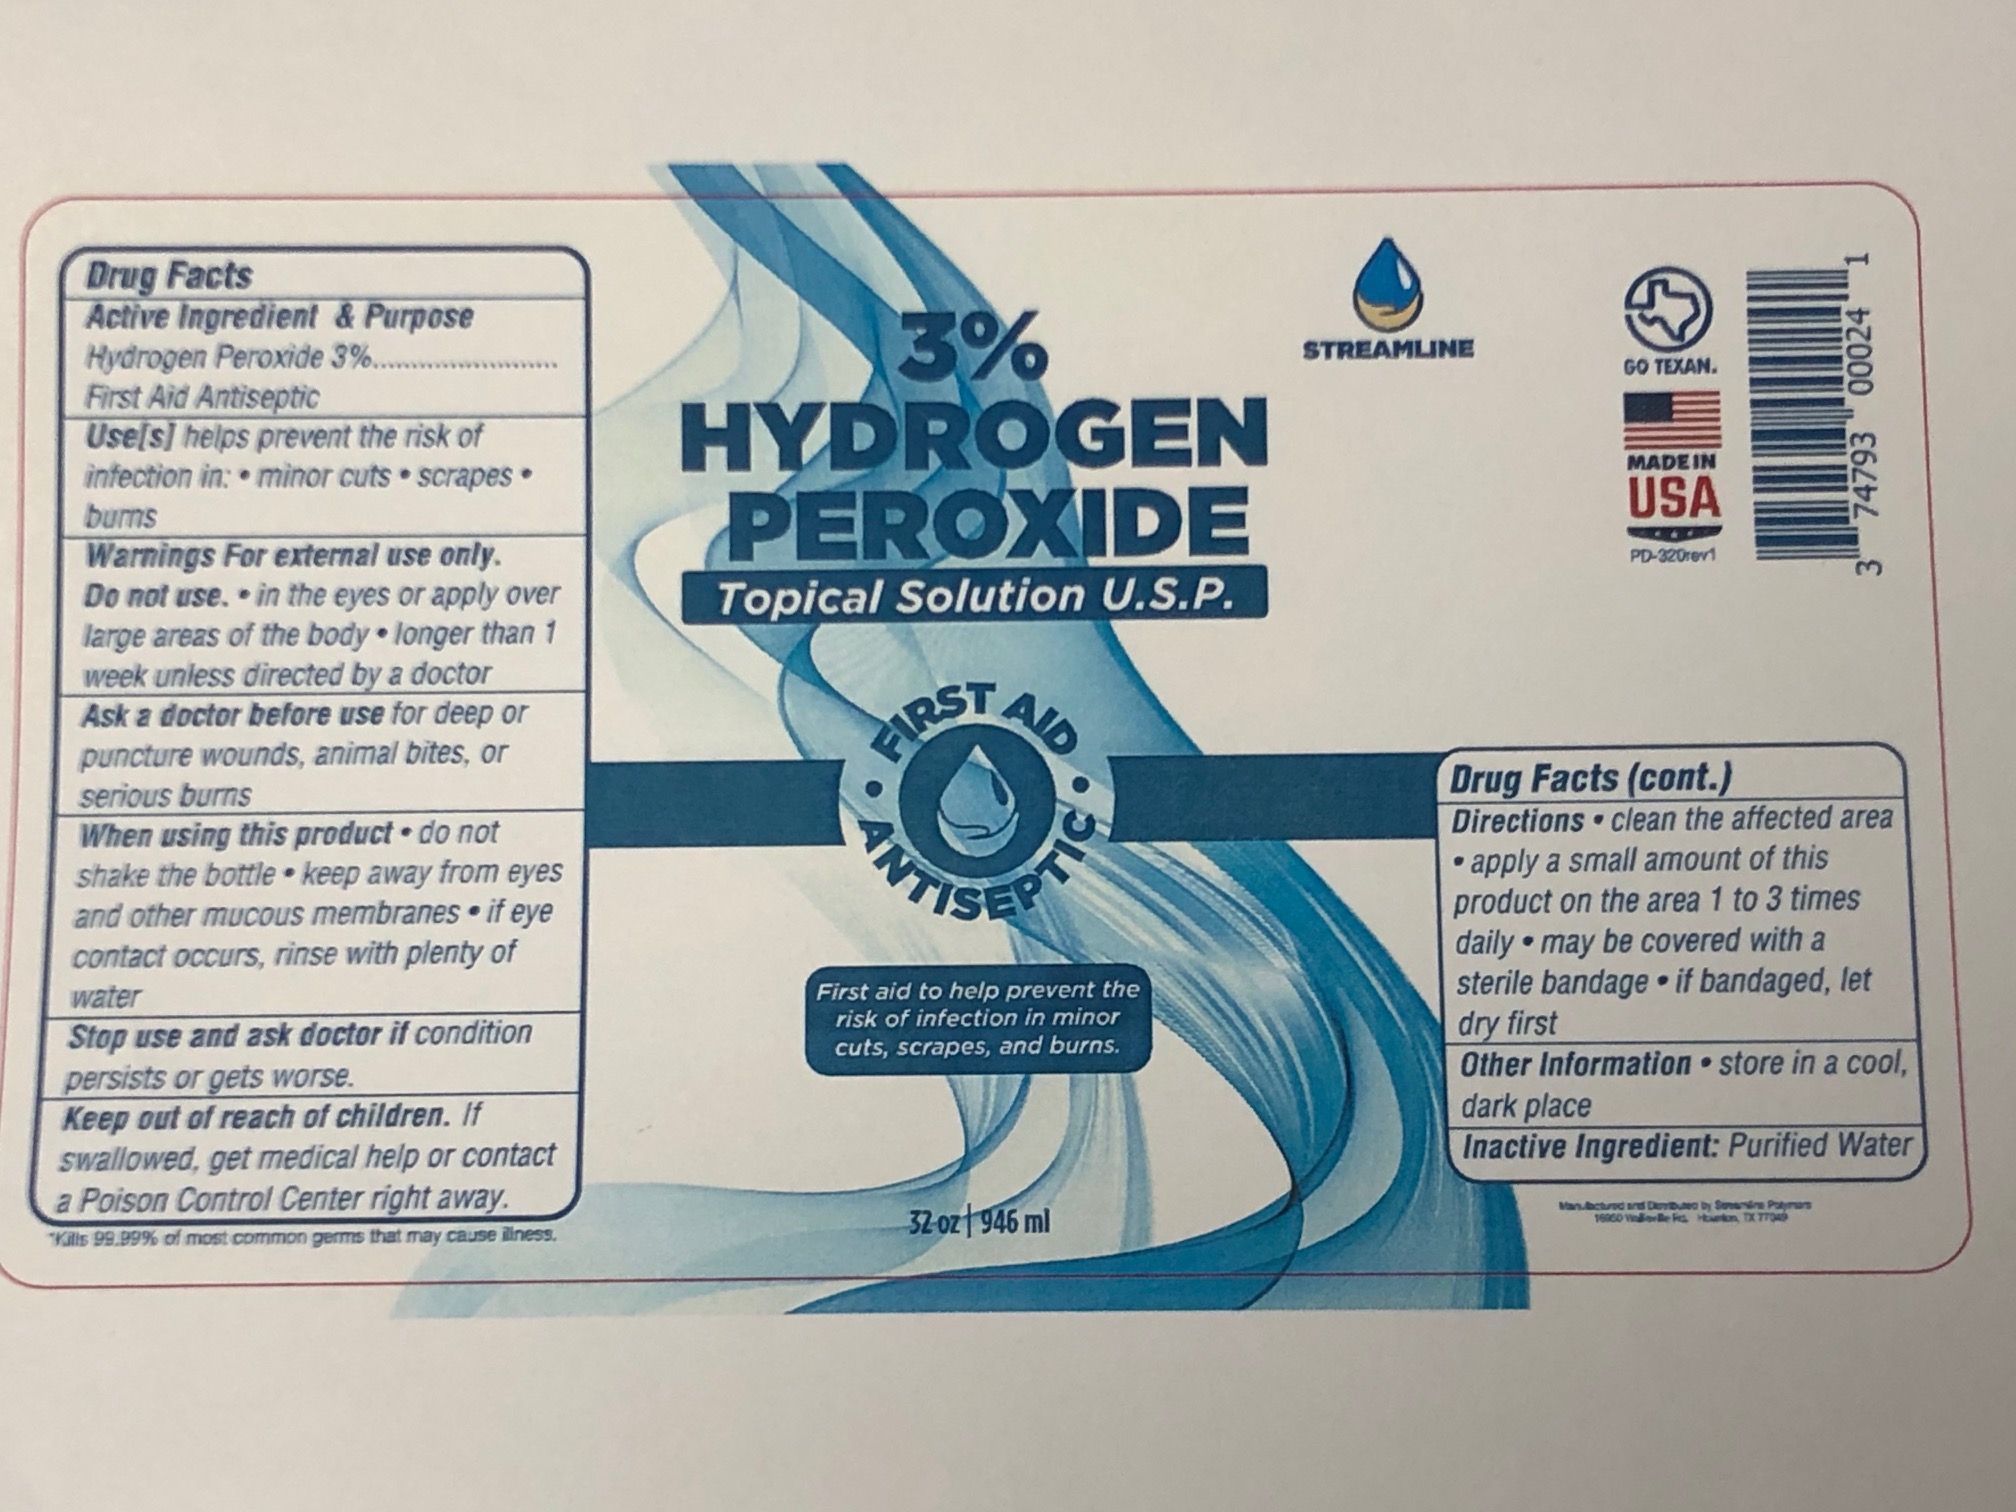 32 oz Hydrogen Peroxide